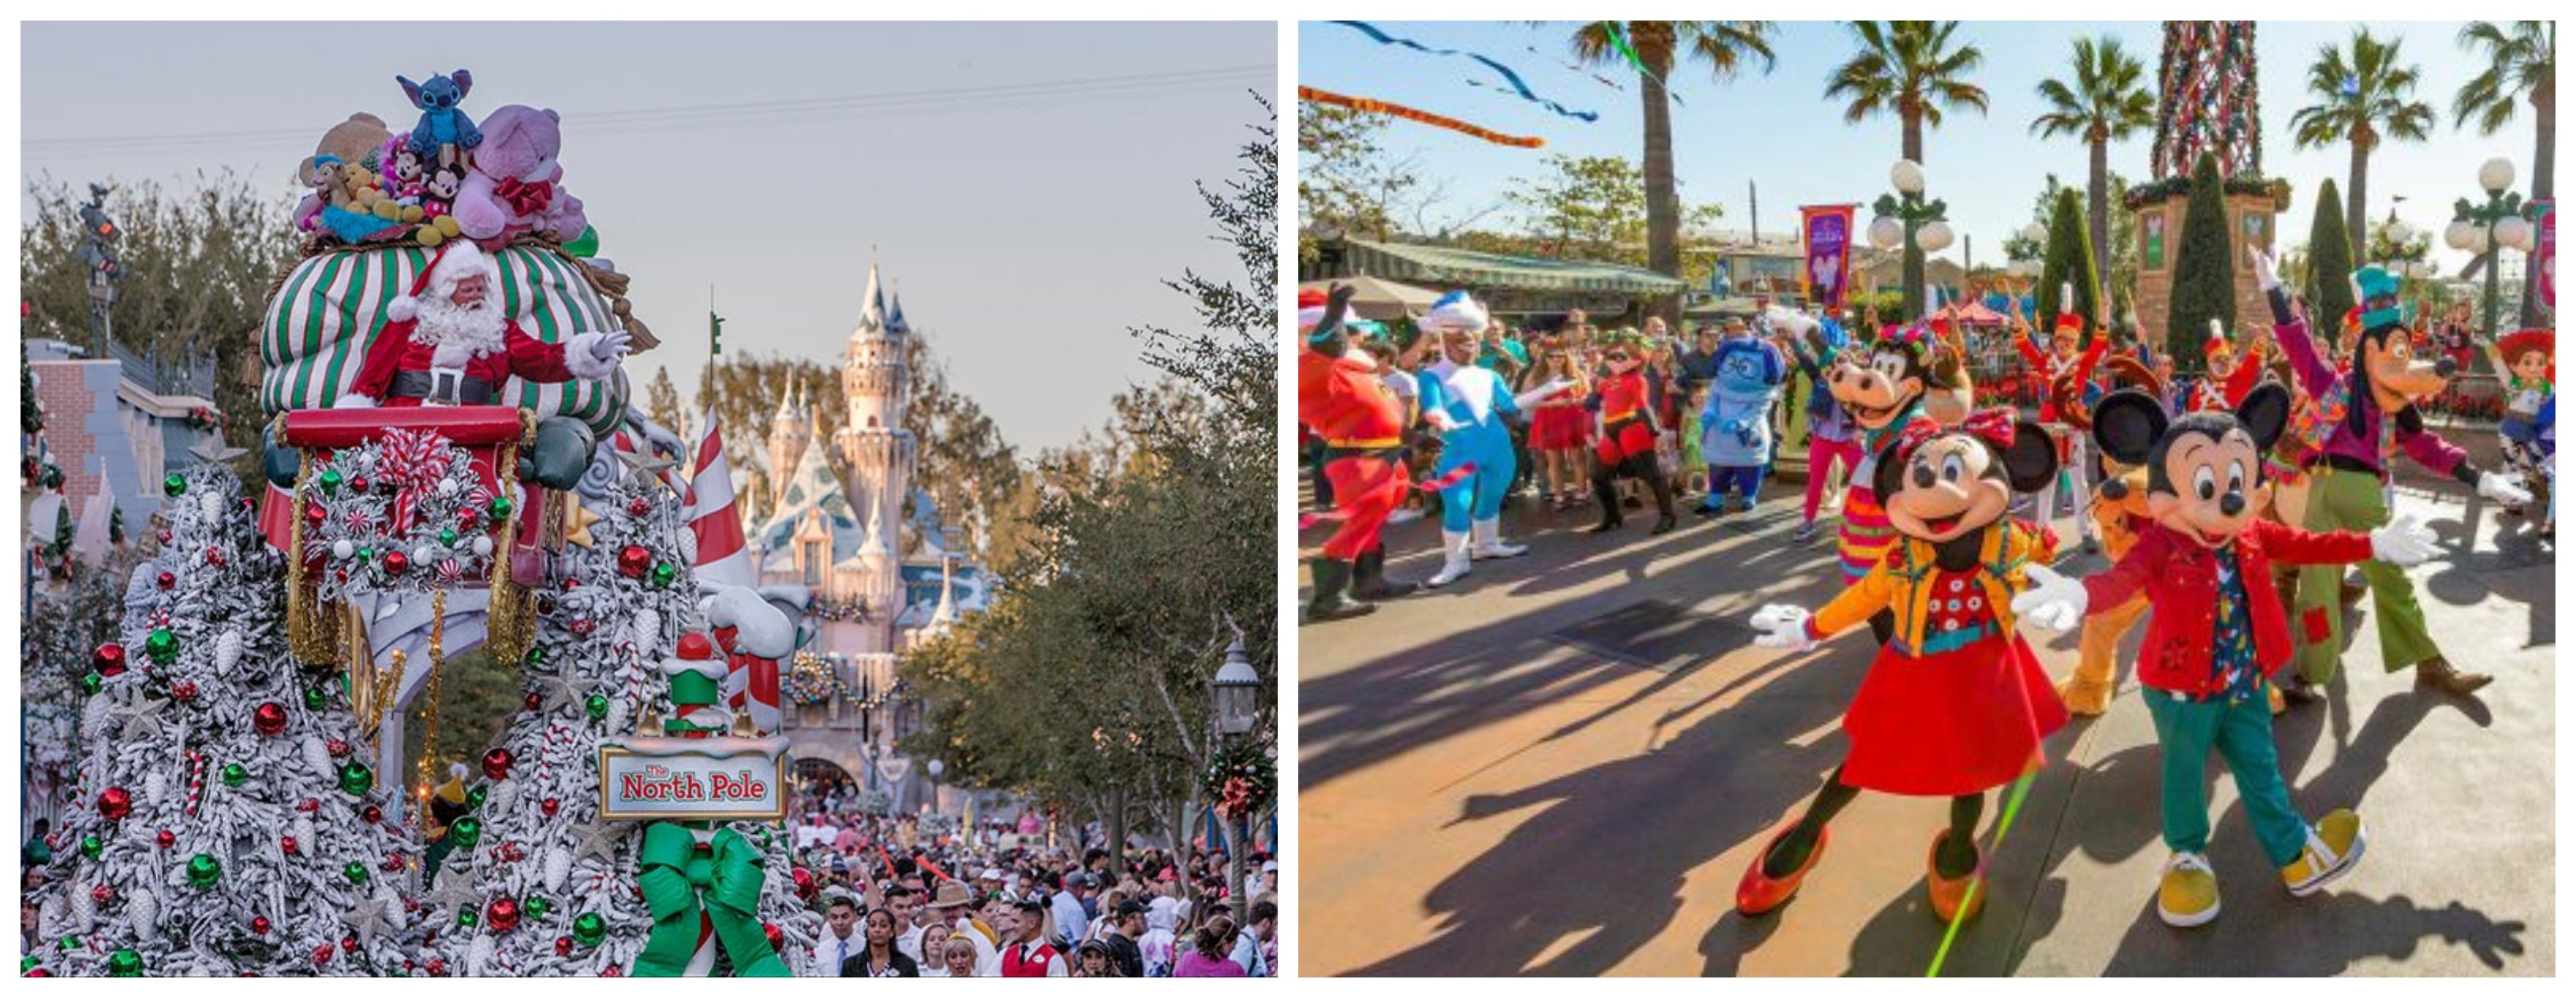 The Holiday Season Has Begun at Disneyland Resort!